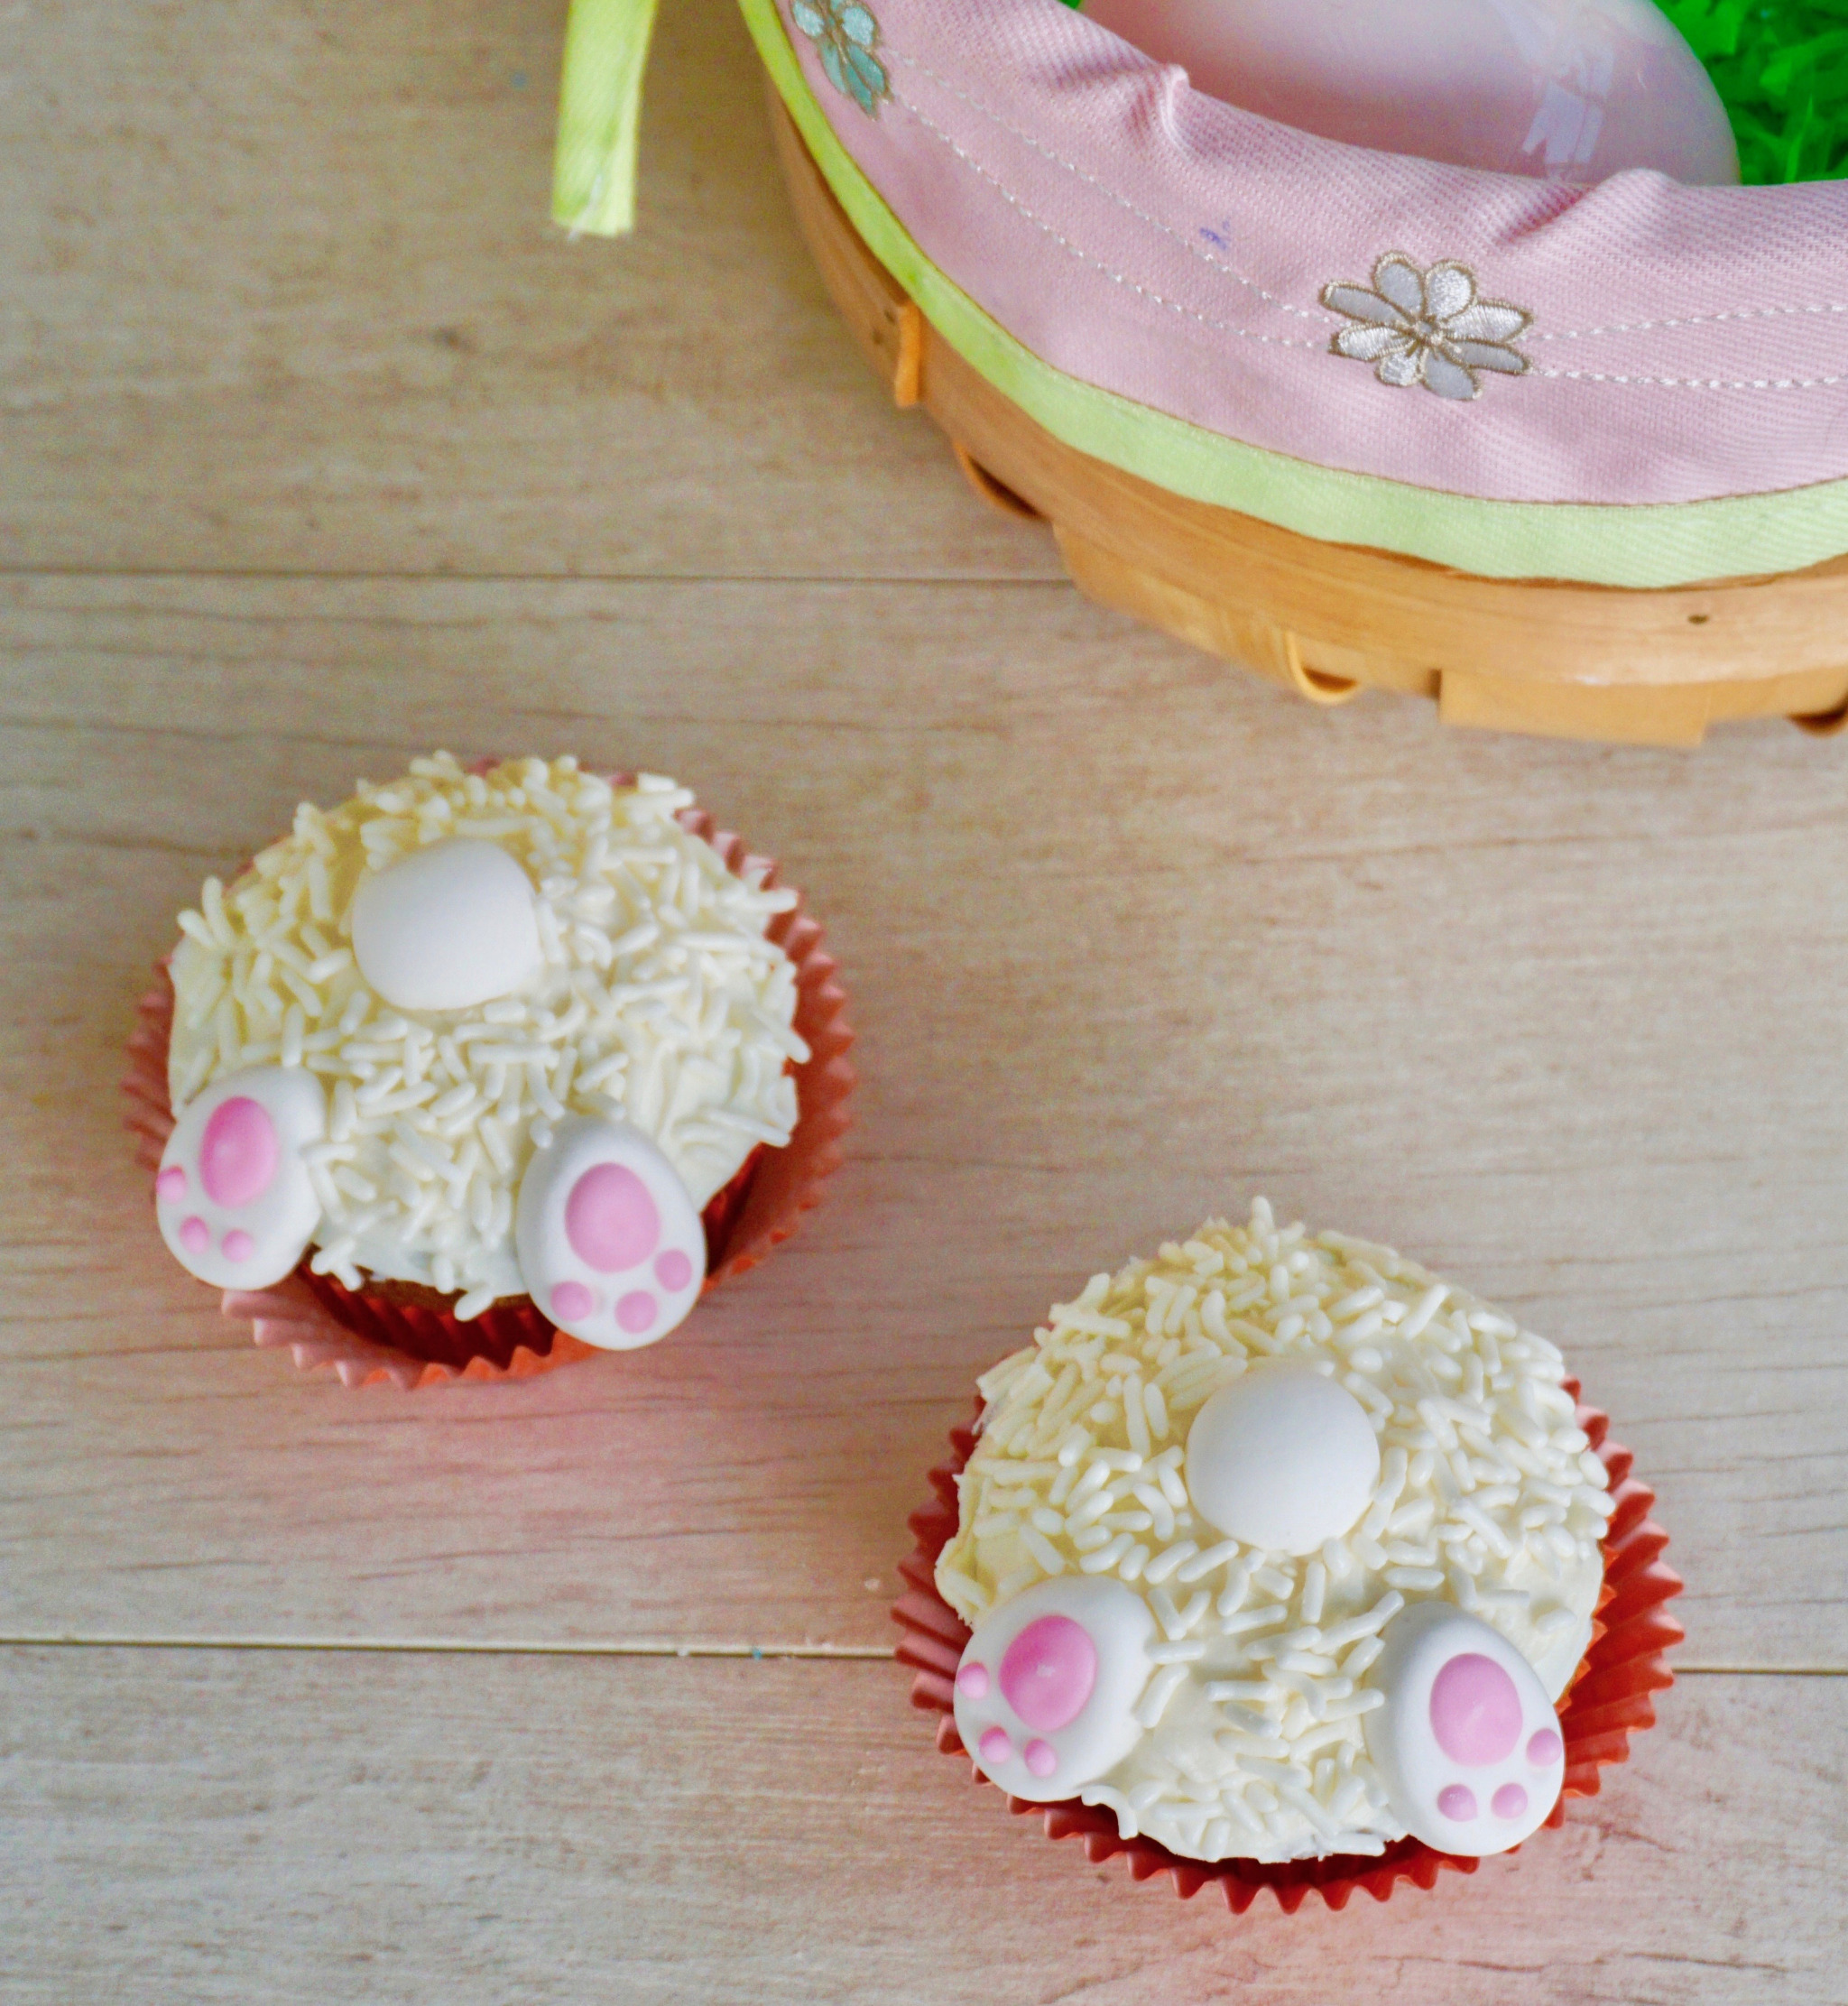 Easy bunny bun cupcakes for Easter